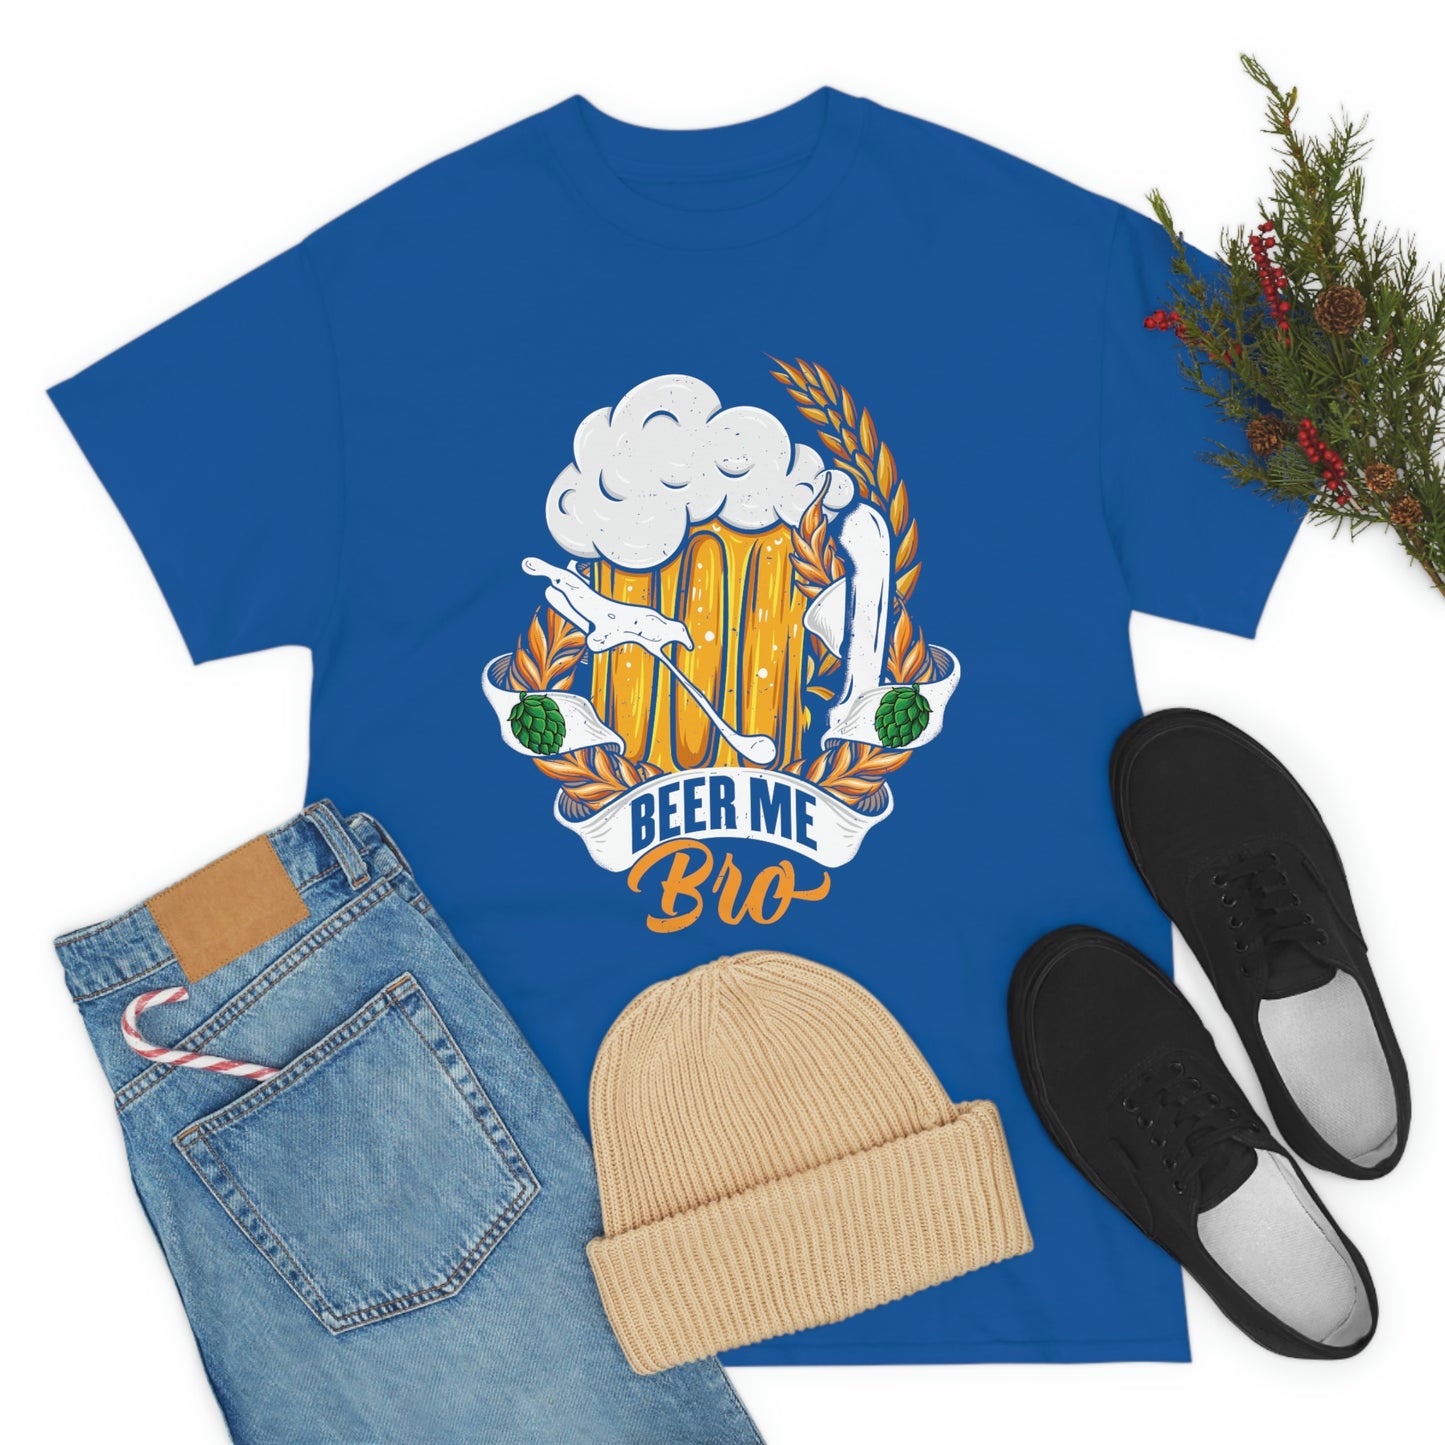 Beer Me, Bro T-Shirt